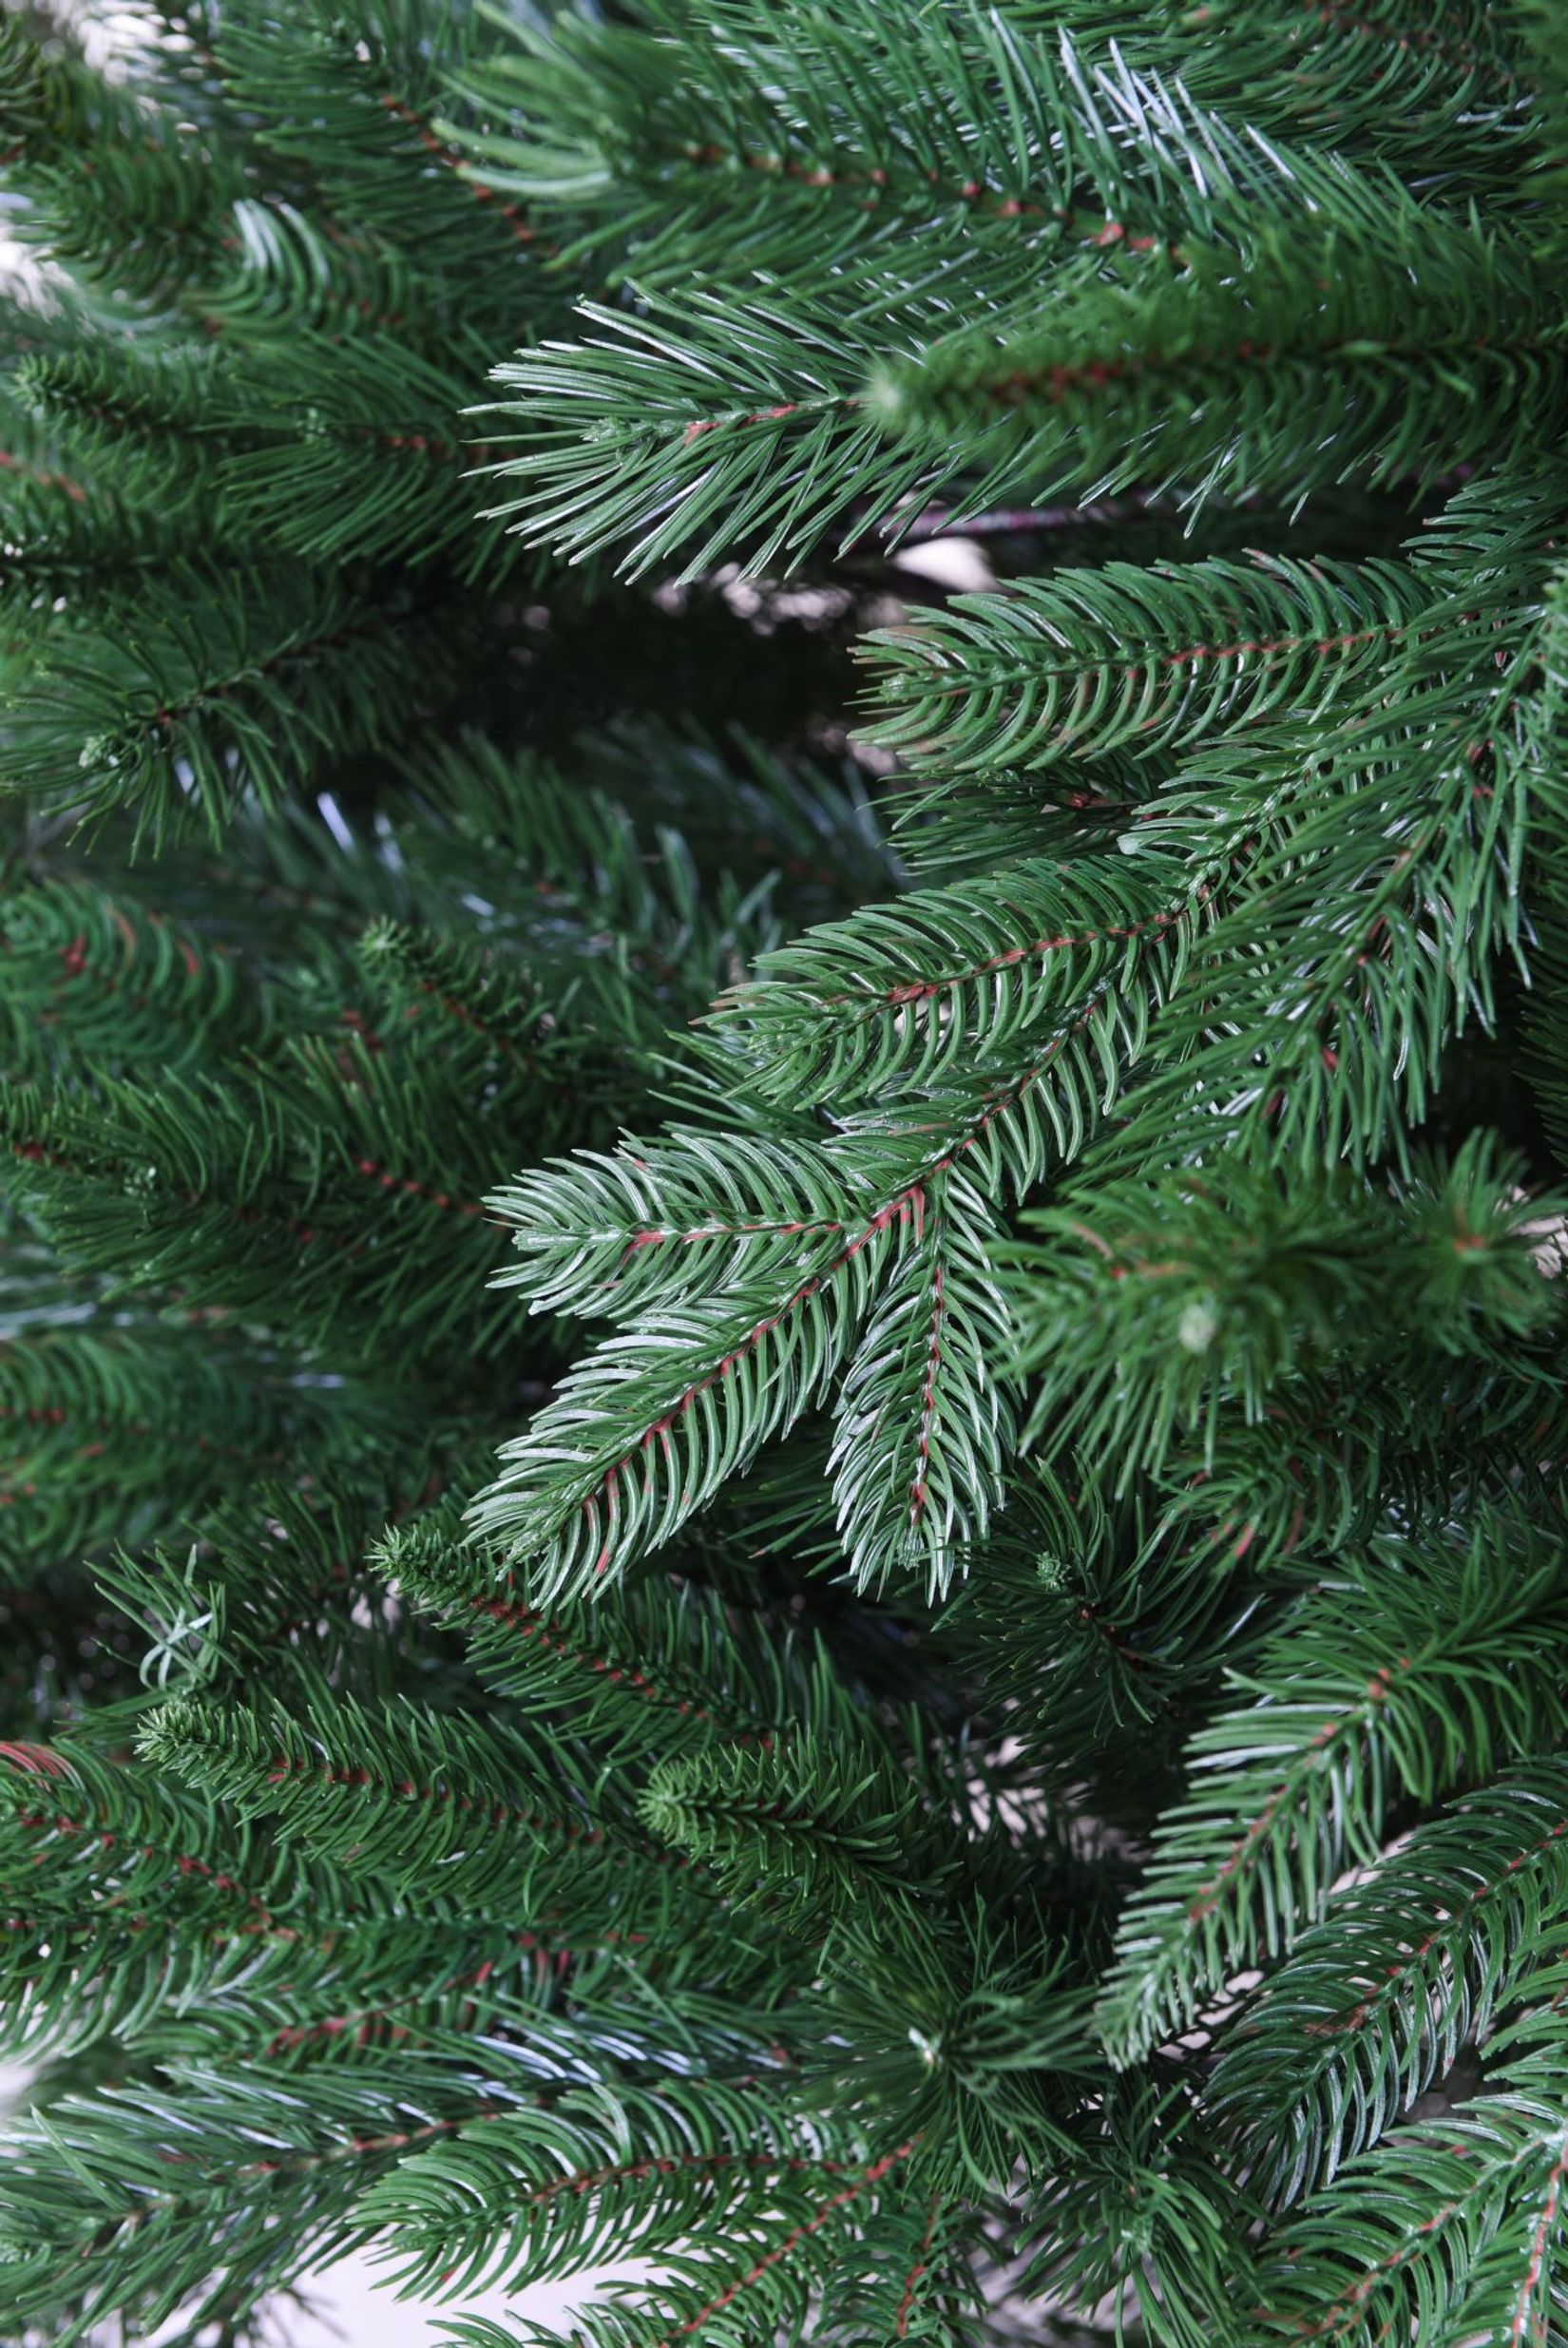 Künstlicher Weihnachtsbaum Premium Nordmanntanne, 270 cm hoch